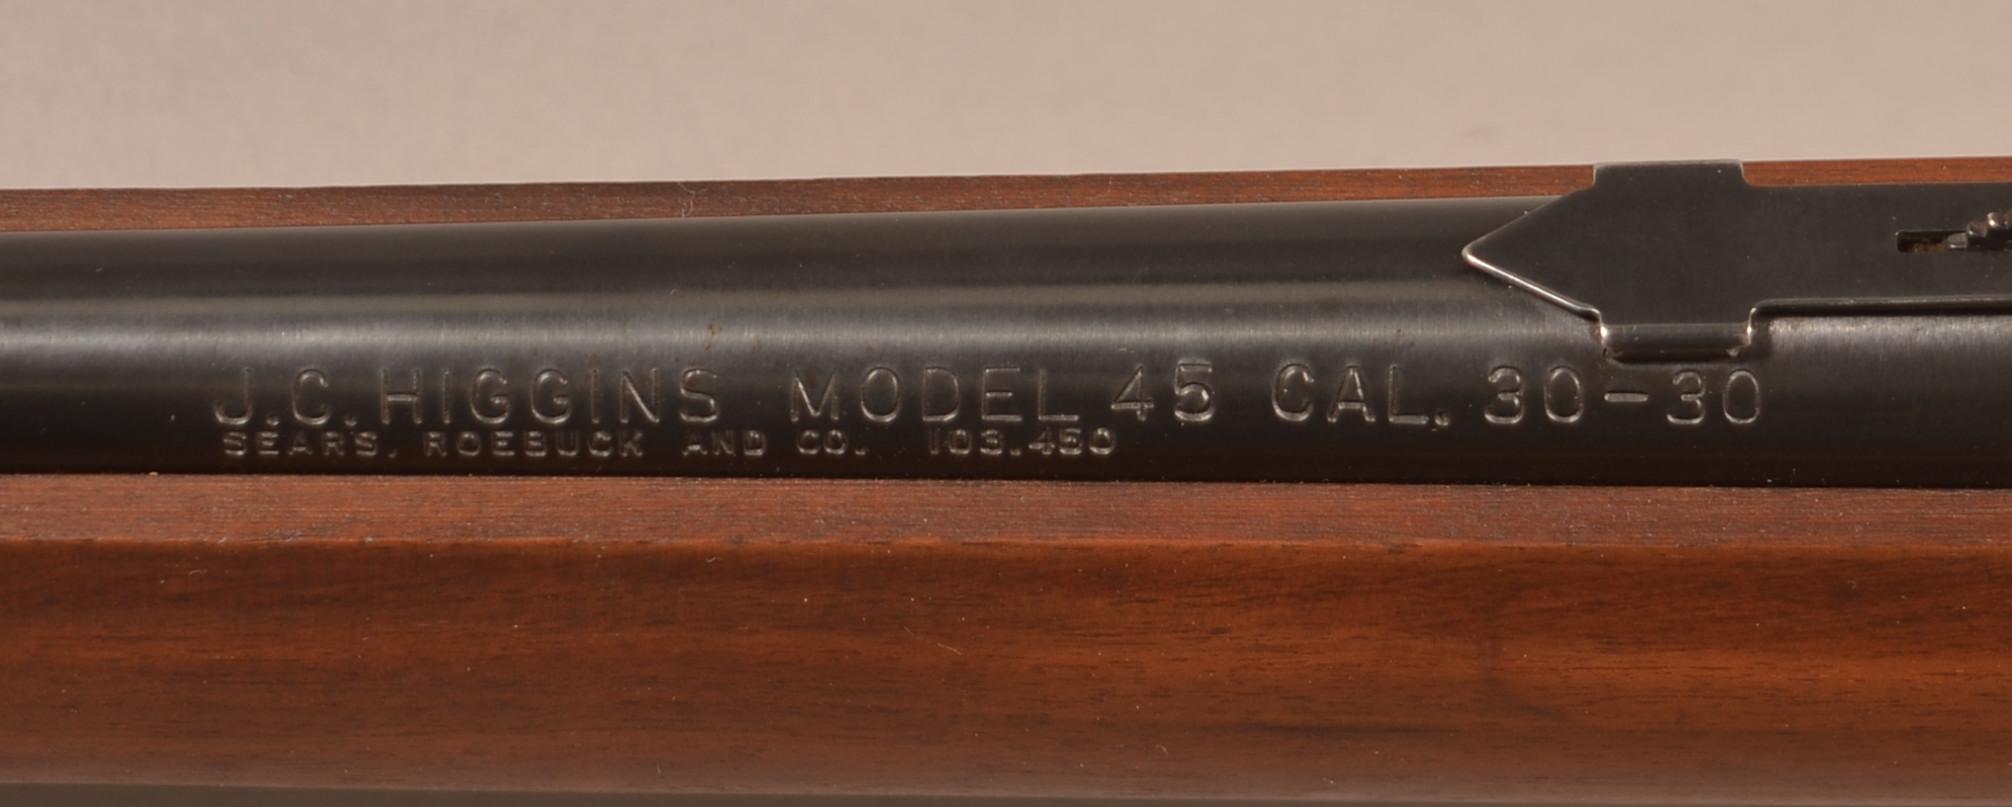 J.C Higgins model 45 30-30 lever action rifle